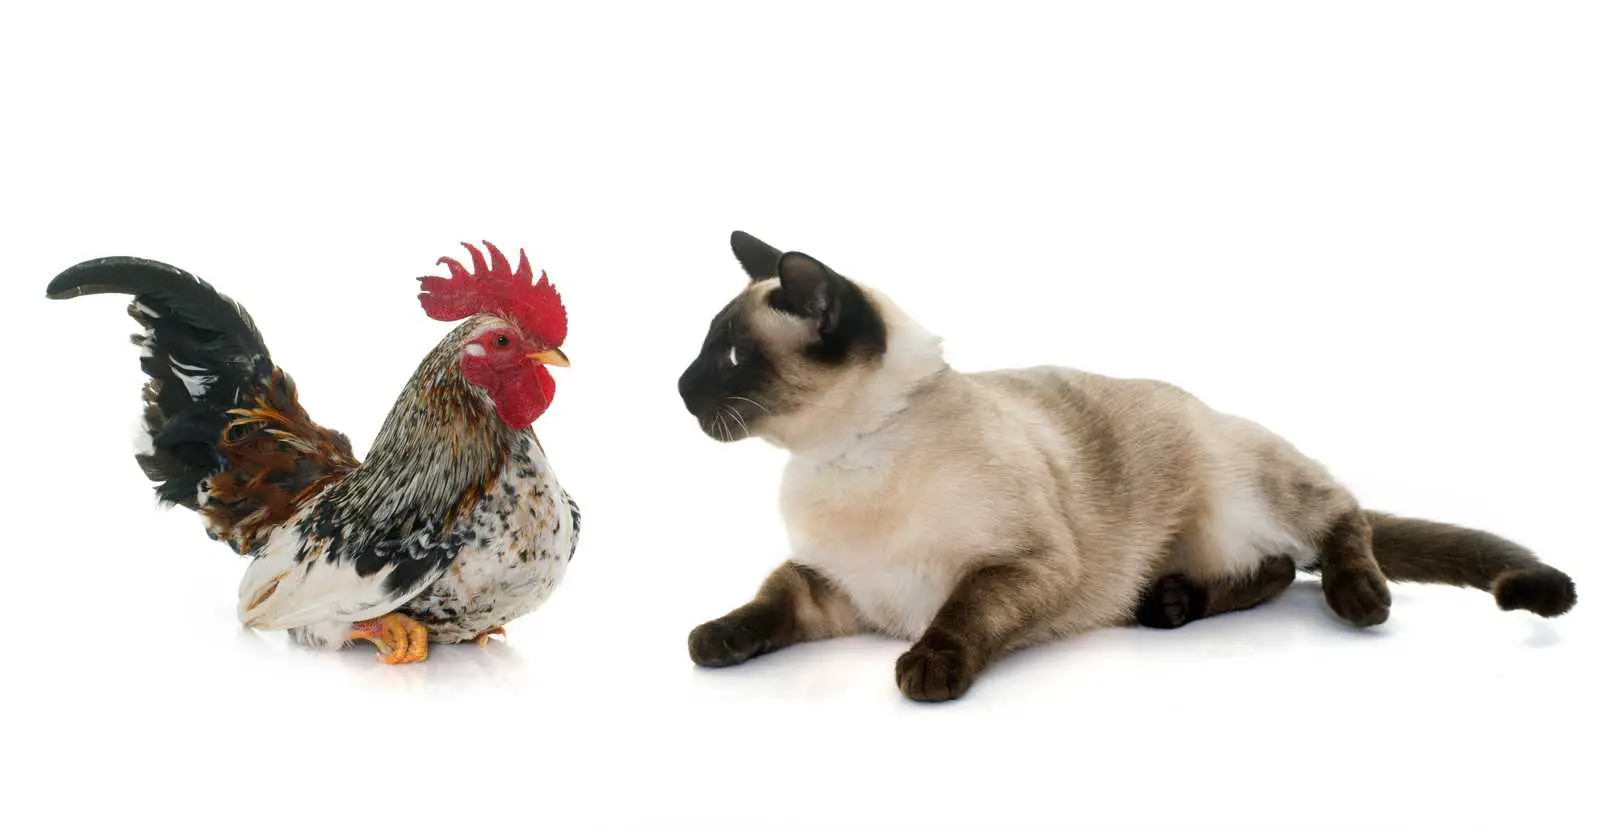 Do Cats Kill Chickens?